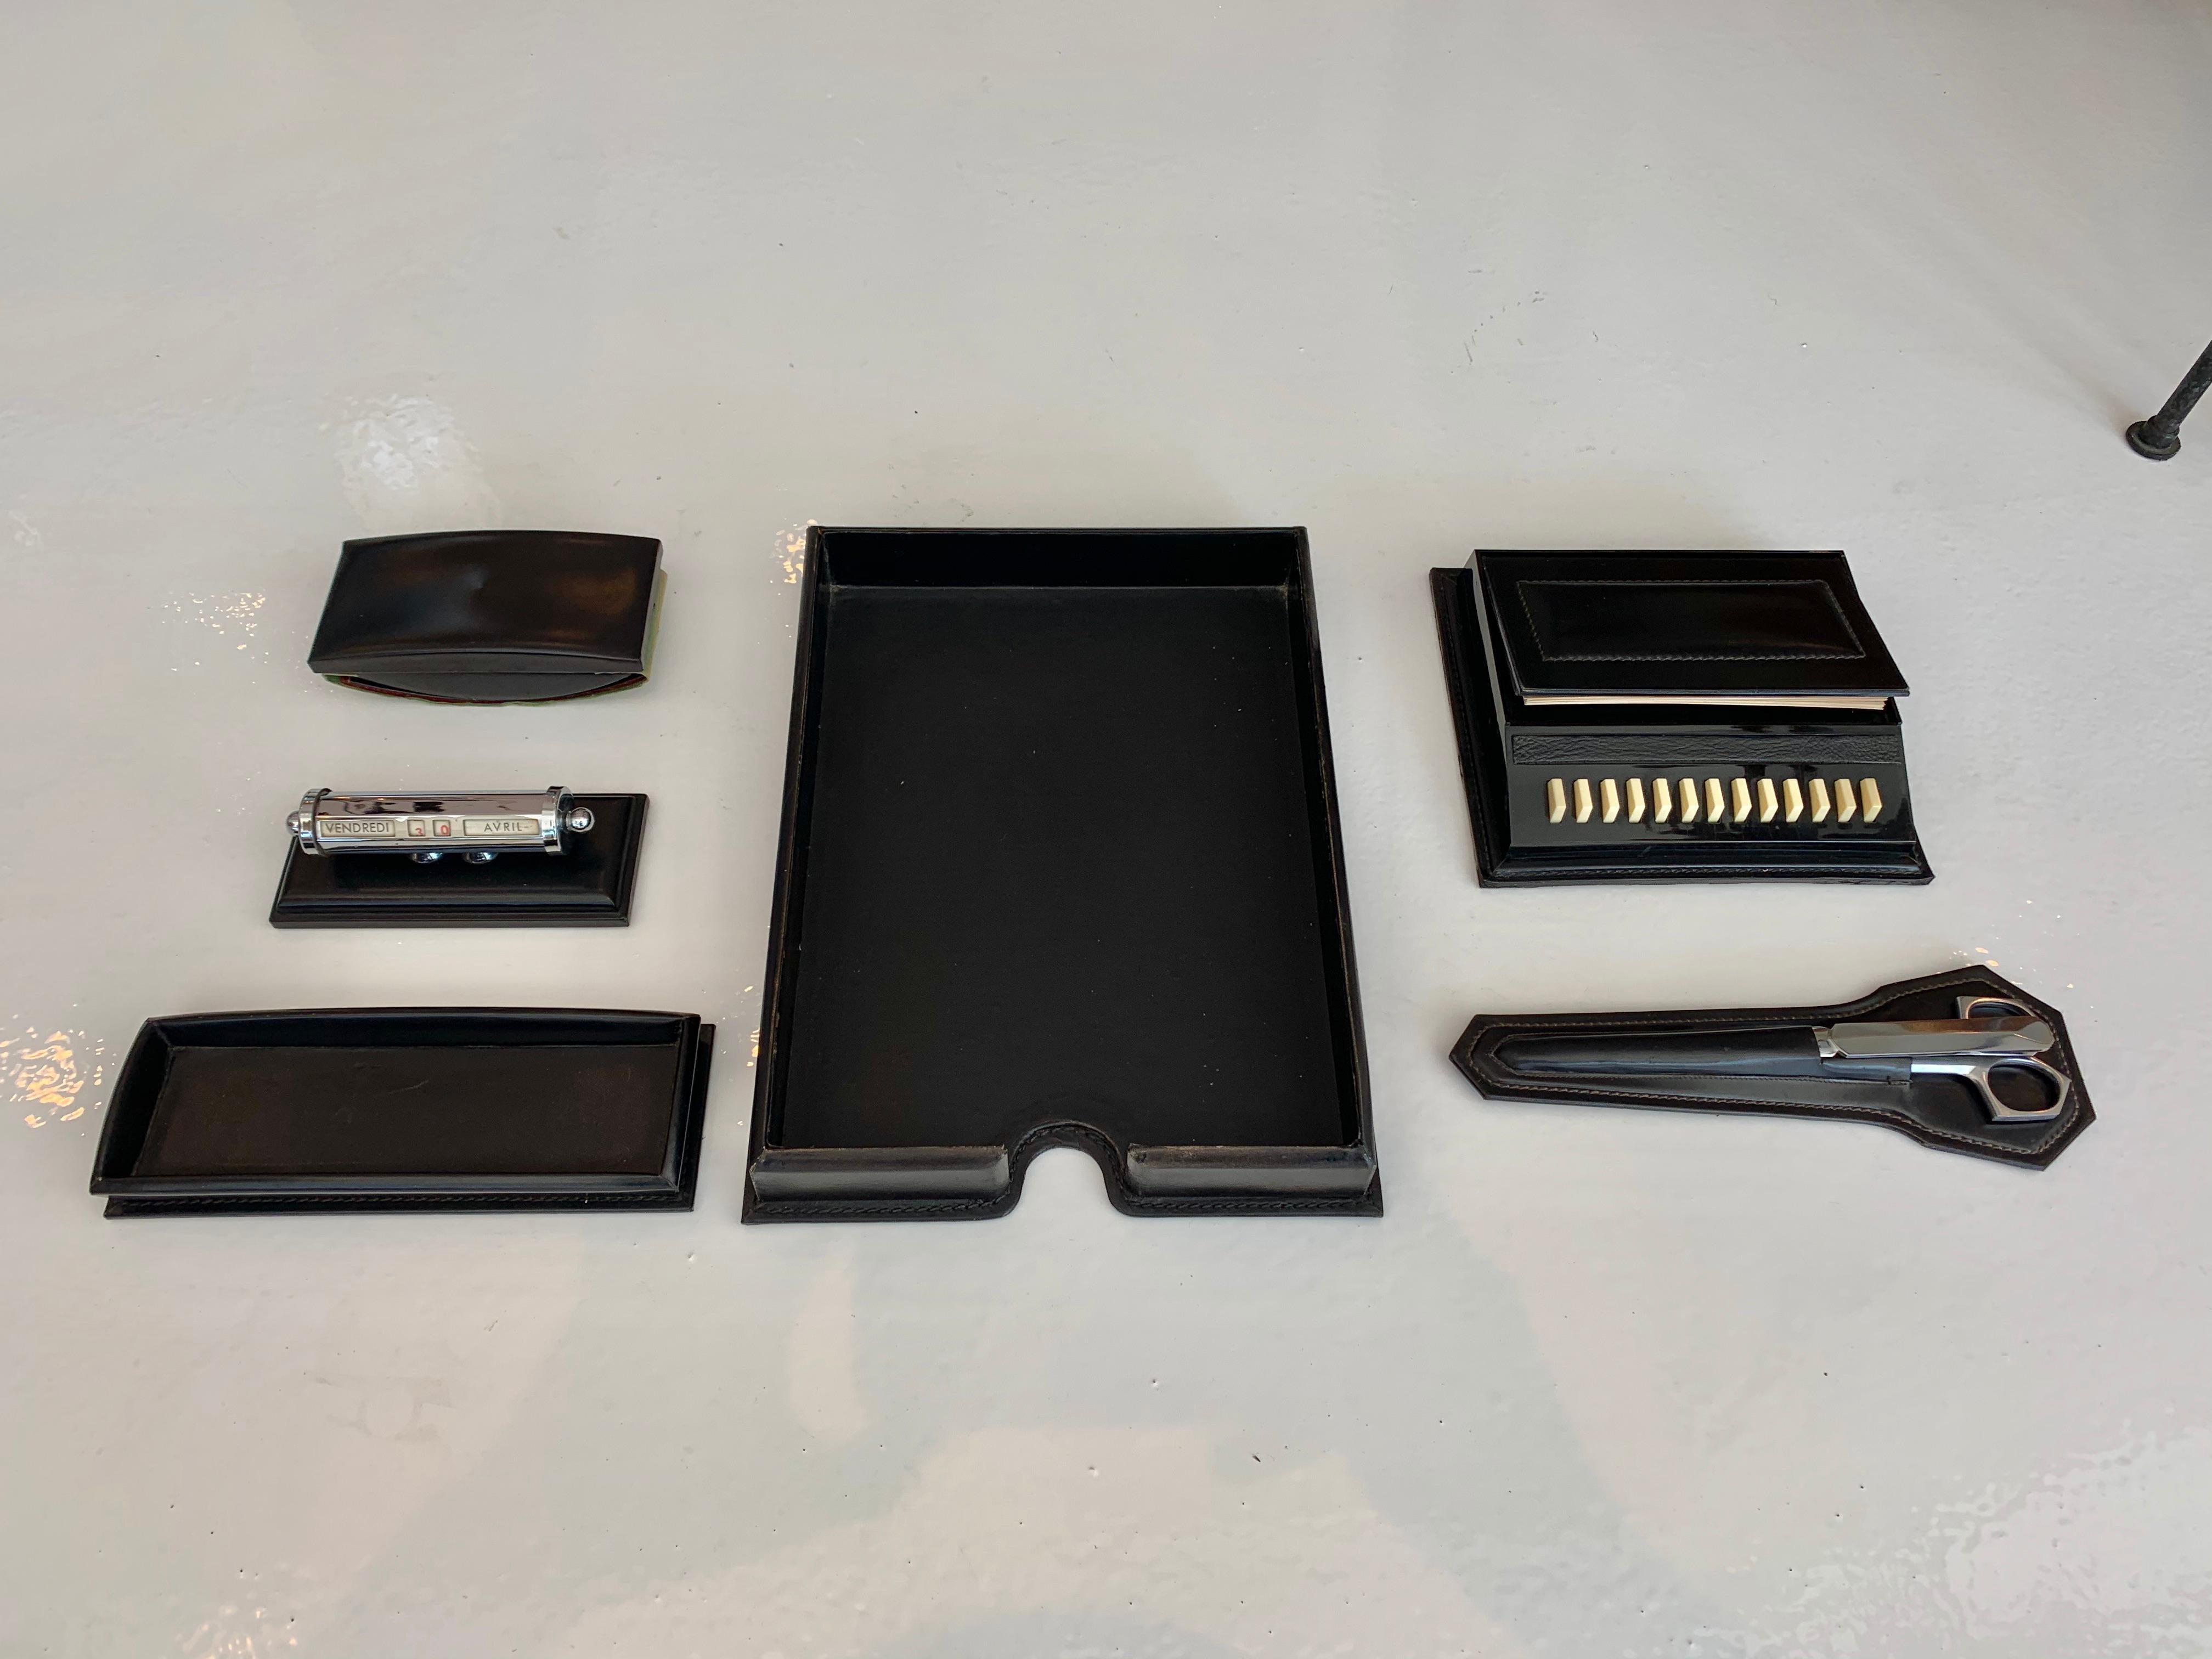 Fantastique ensemble de bureau en cuir français 6 pièces par Le Tanneur. Toutes les pièces sont habillées de cuir noir avec des surpiqûres contrastées blanches. L'ensemble de bureau comprend un porte-papier, un porte-stylo, un tampon encreur, un